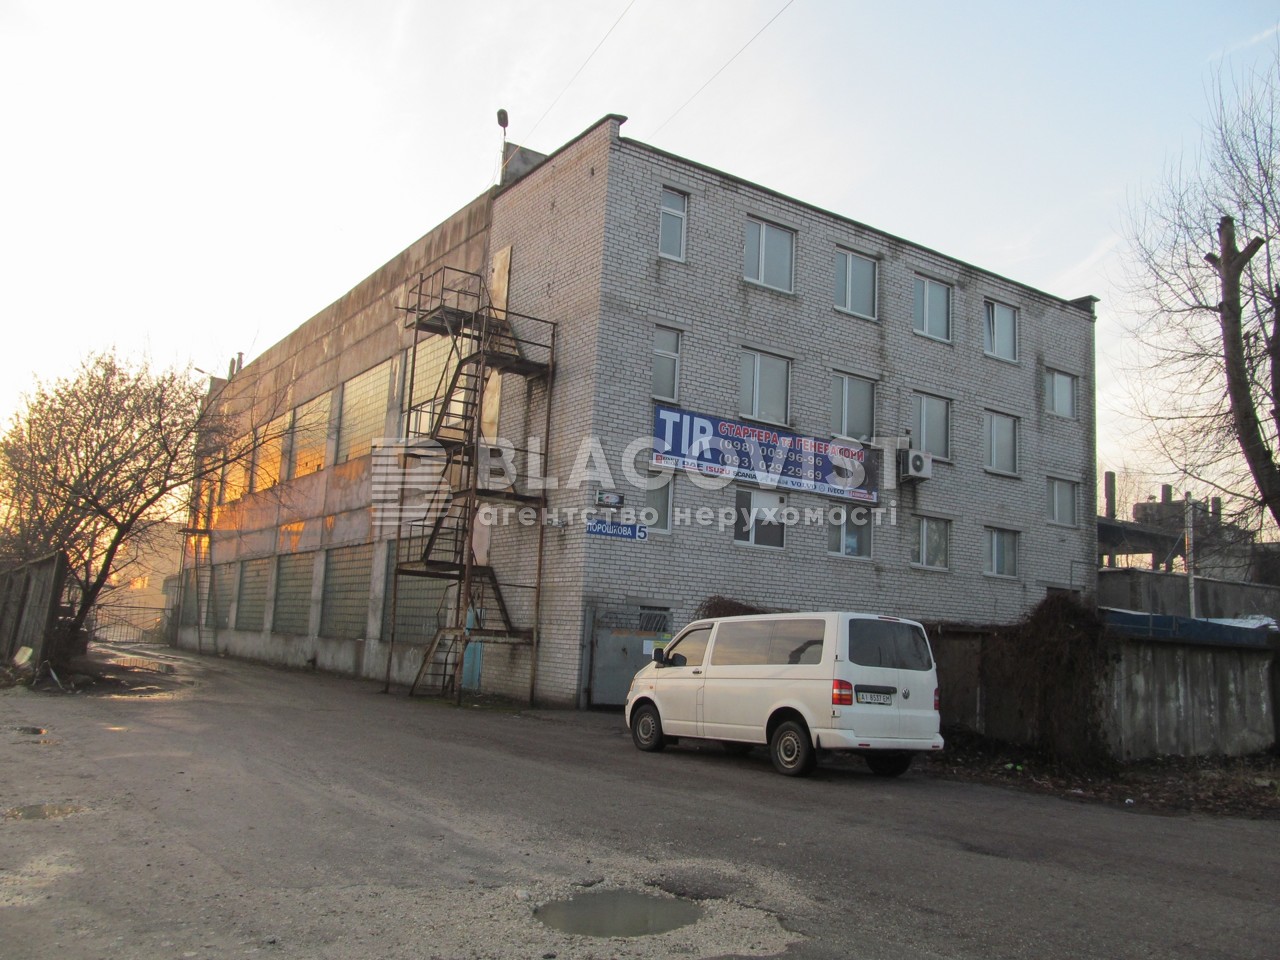  Производственное помещение, Порошковая, Бровары, G-591723 - Фото 1